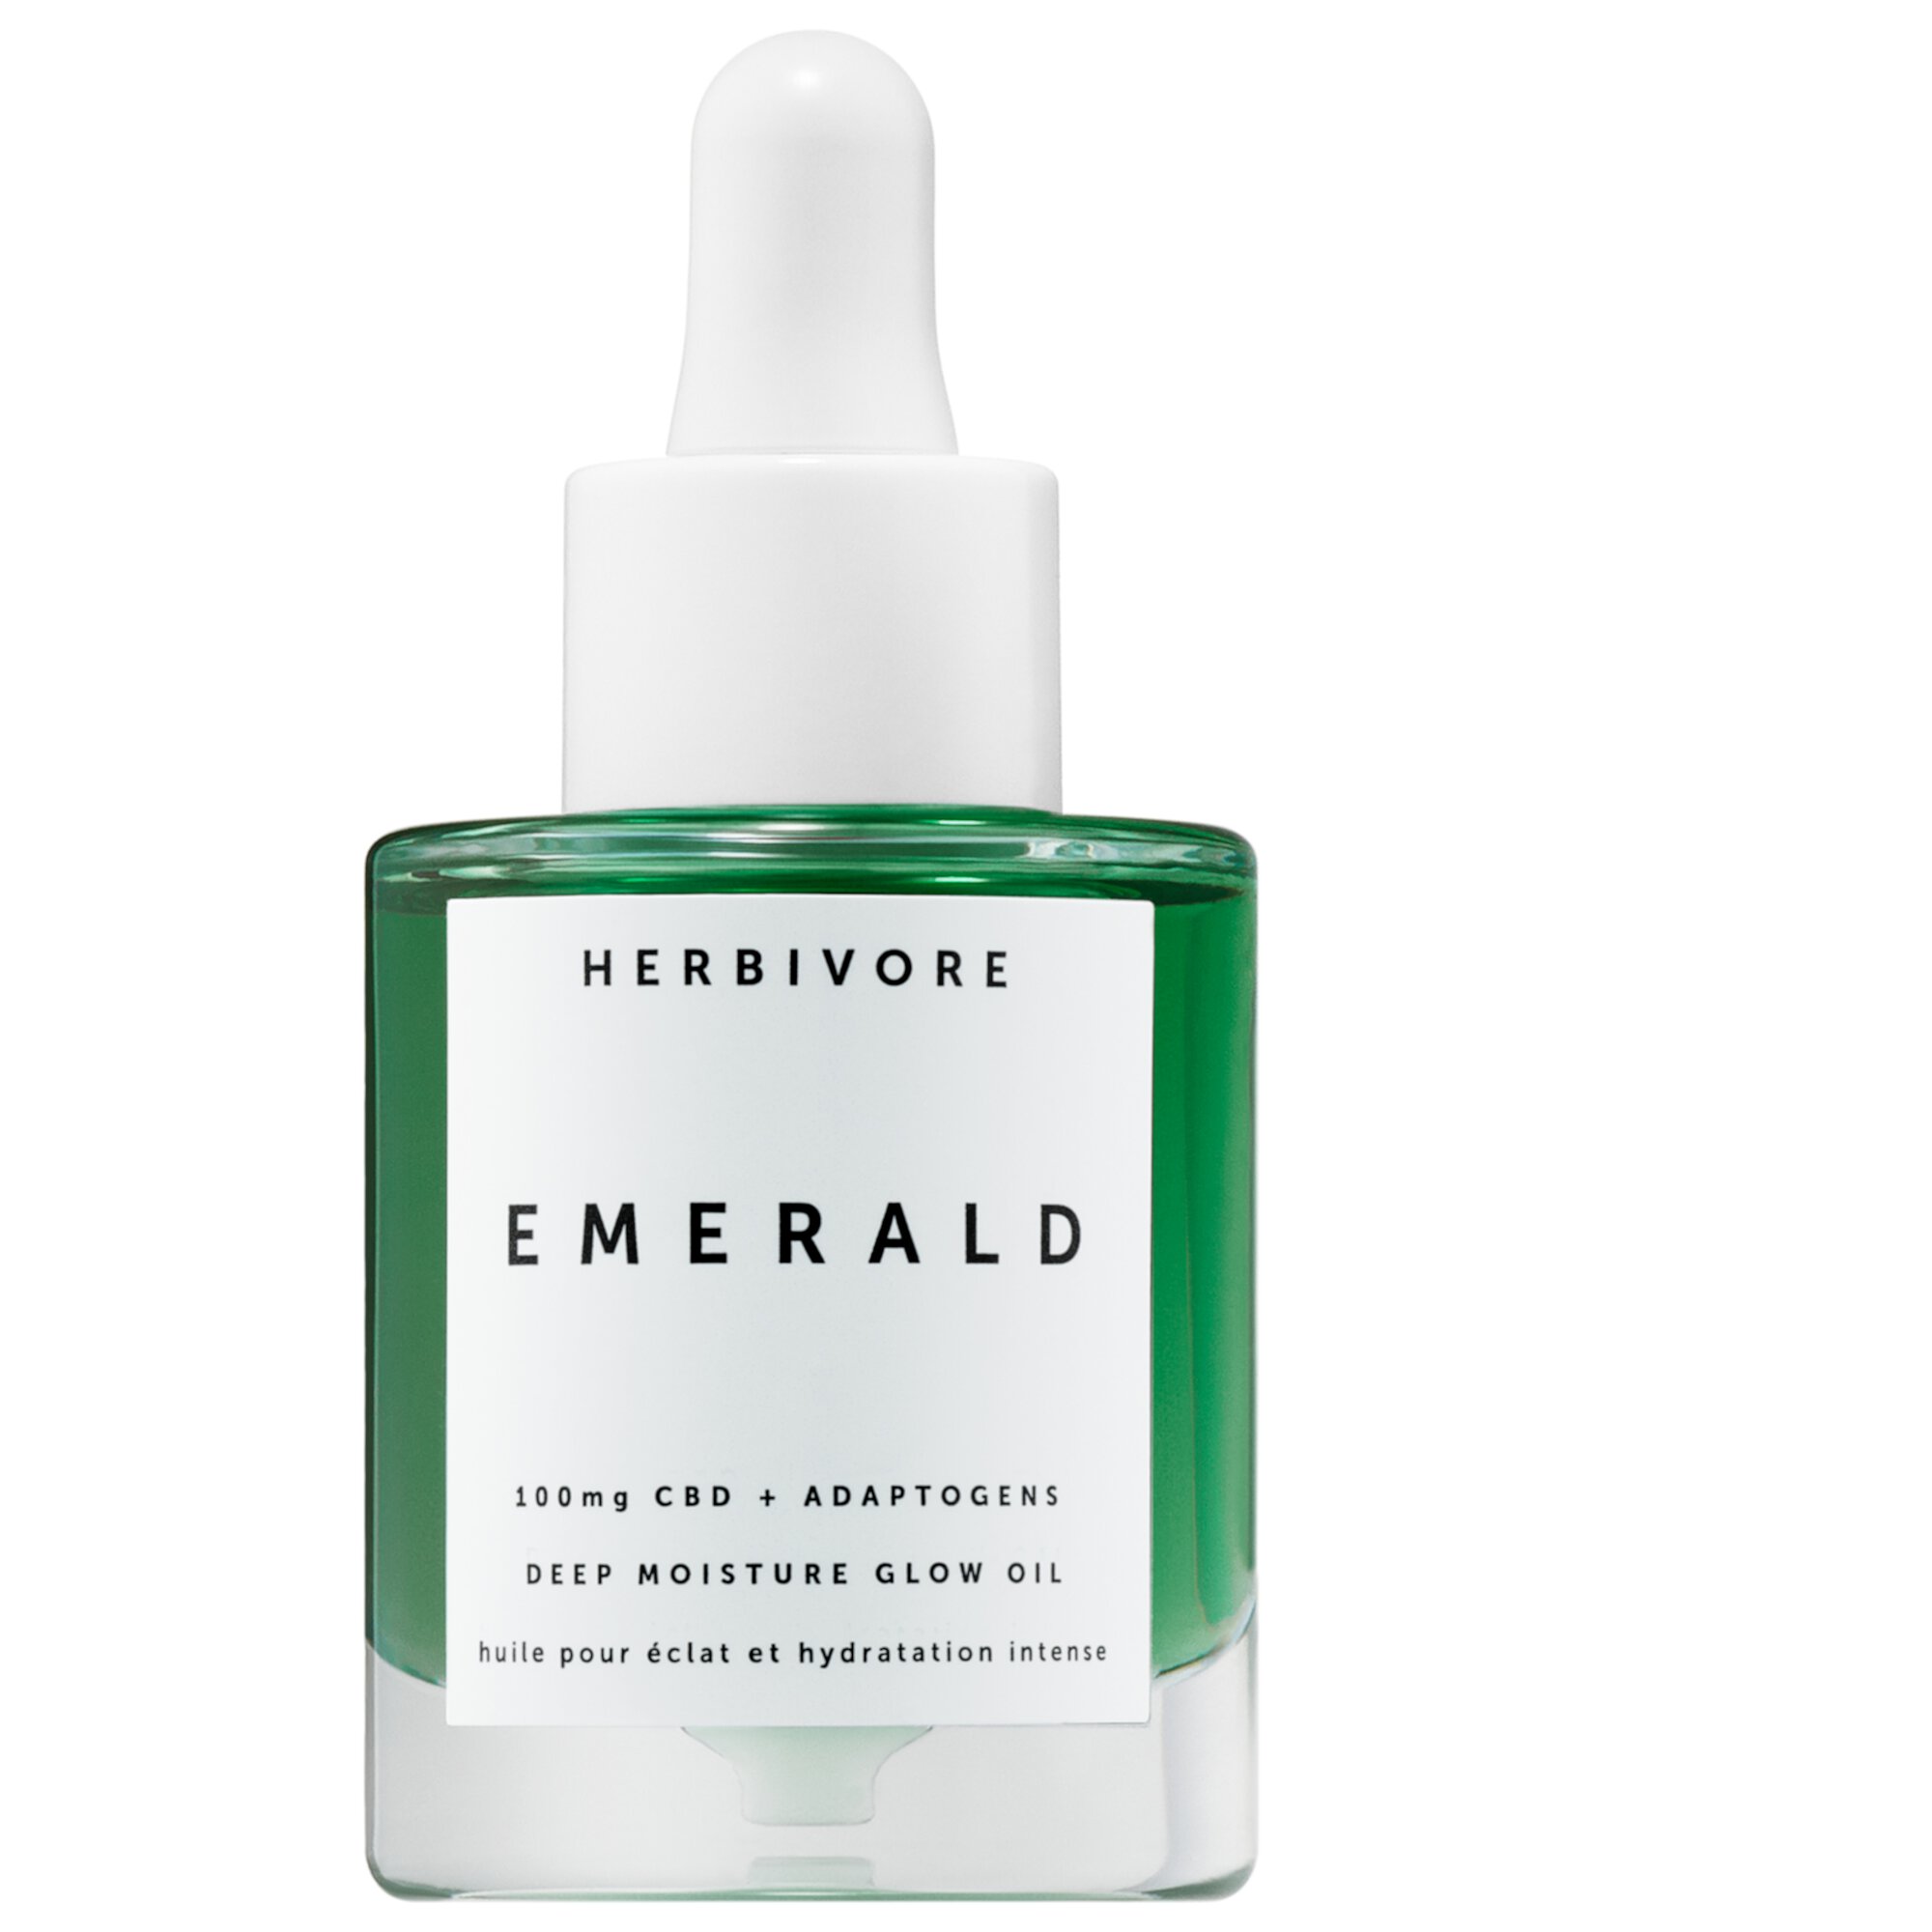 Emerald CBD + Адаптогены Глубоко увлажняющее сияющее масло Herbivore